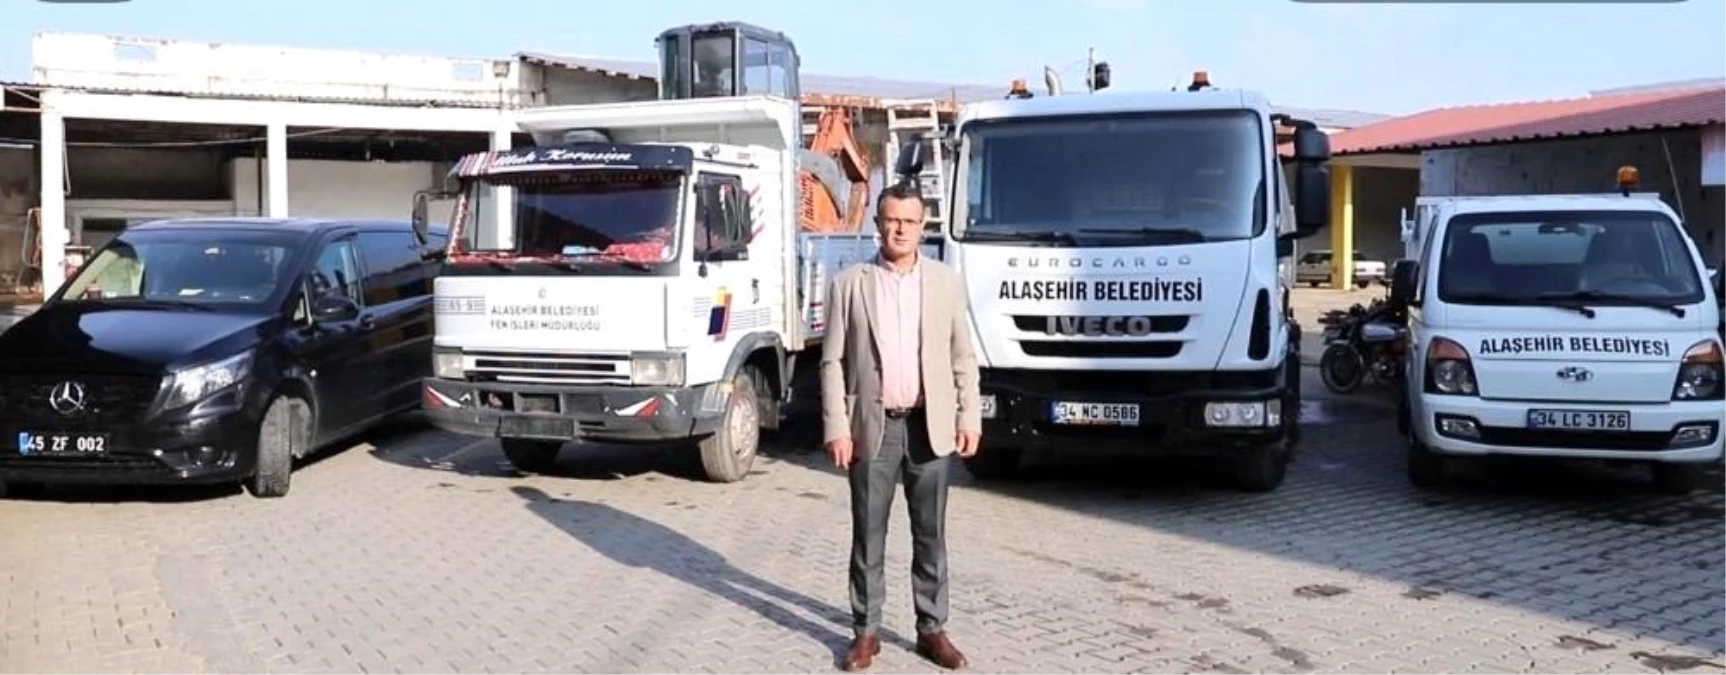 Alaşehir Belediyesi araç filosuna 4 yeni araç daha katıldı